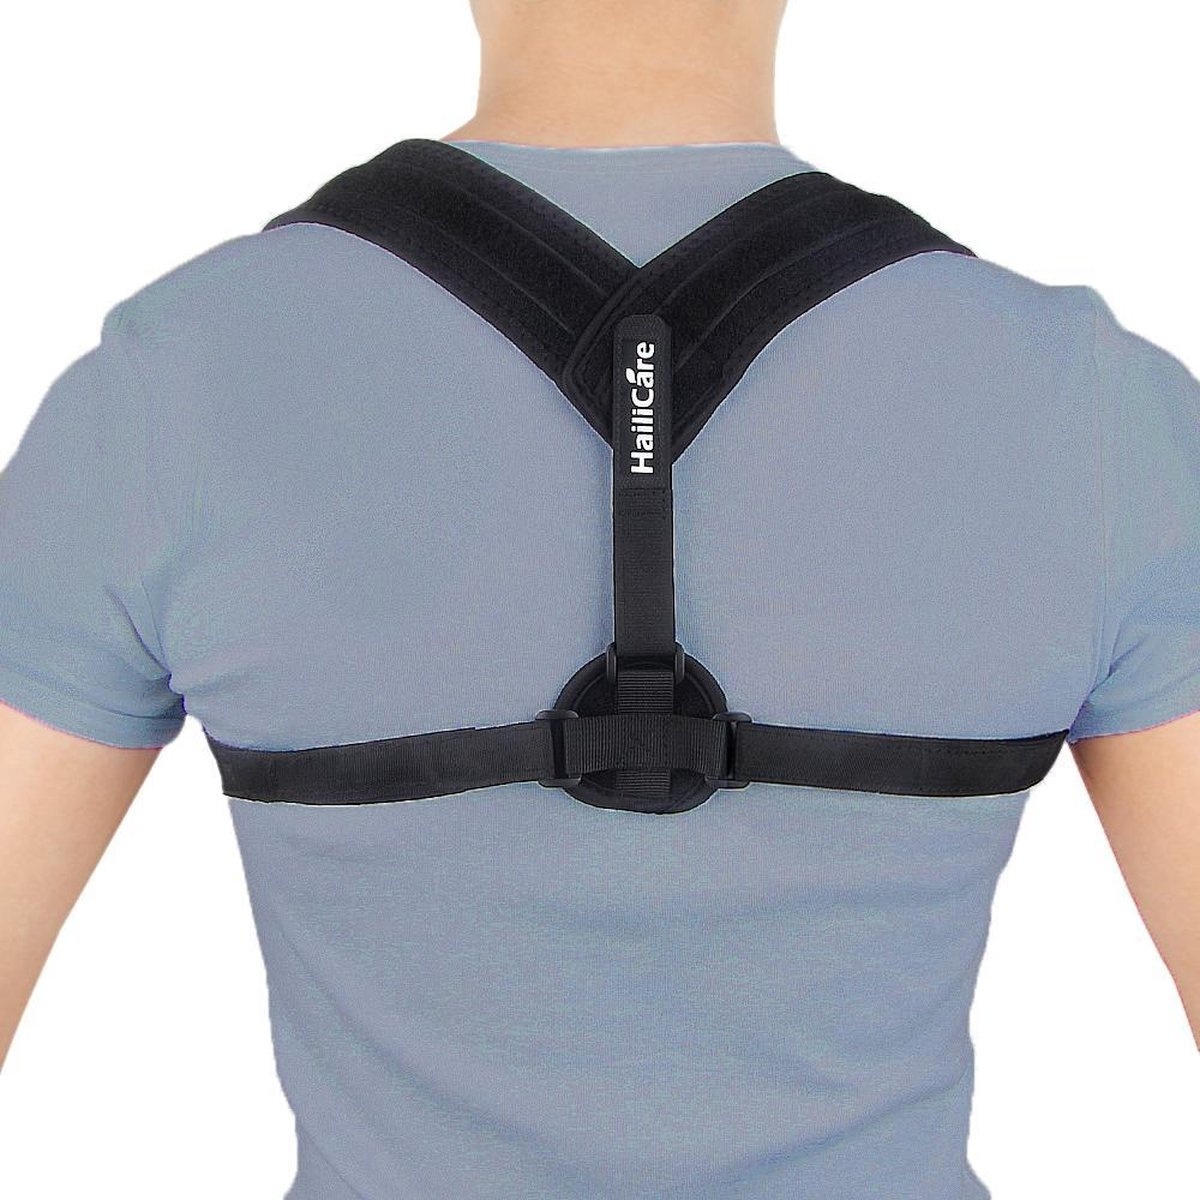 Premium Gin günstig Kaufen-Rückenbandage - Einheitsgröße - Die Original Athena Premium Rückenbandage - Haltungskorrekturbandage - Rücken und Schulter. Rückenbandage - Einheitsgröße - Die Original Athena Premium Rückenbandage - Haltungsko